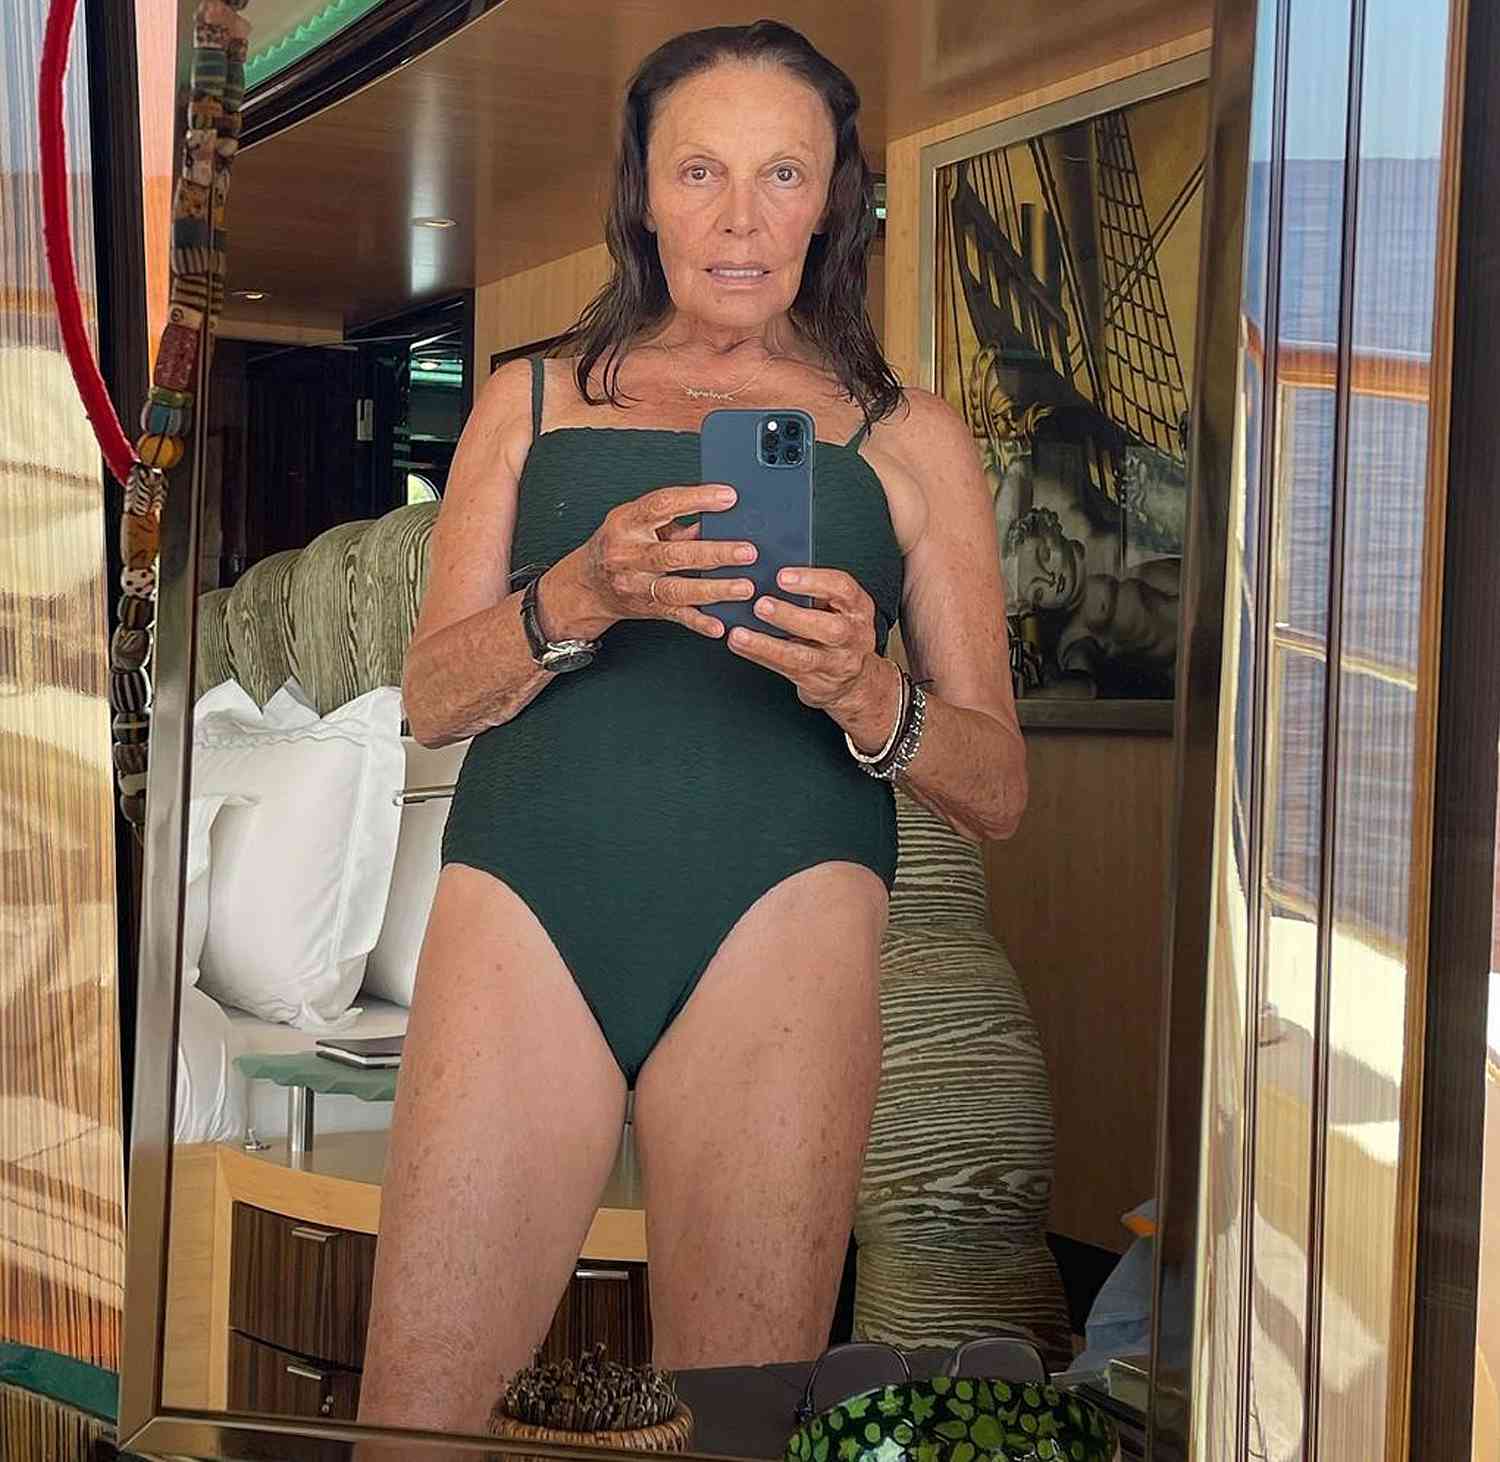 Diane von furstenberg bikini - Real Naked Girls